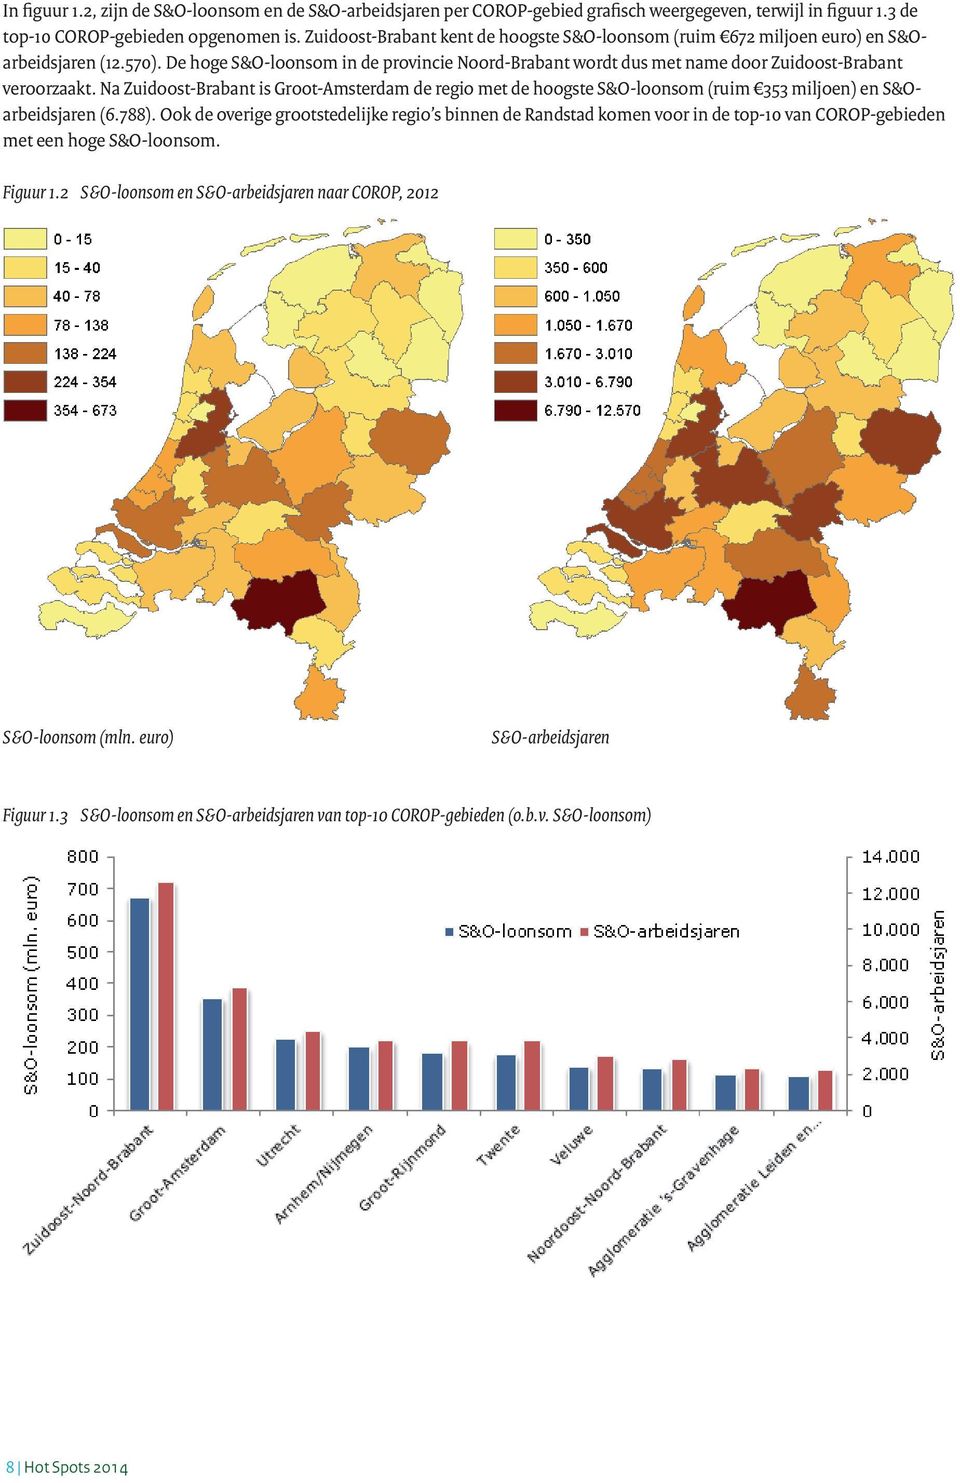 De hoge S&O-loonsom in de provincie Noord-Brabant wordt dus met name door Zuidoost-Brabant veroorzaakt.